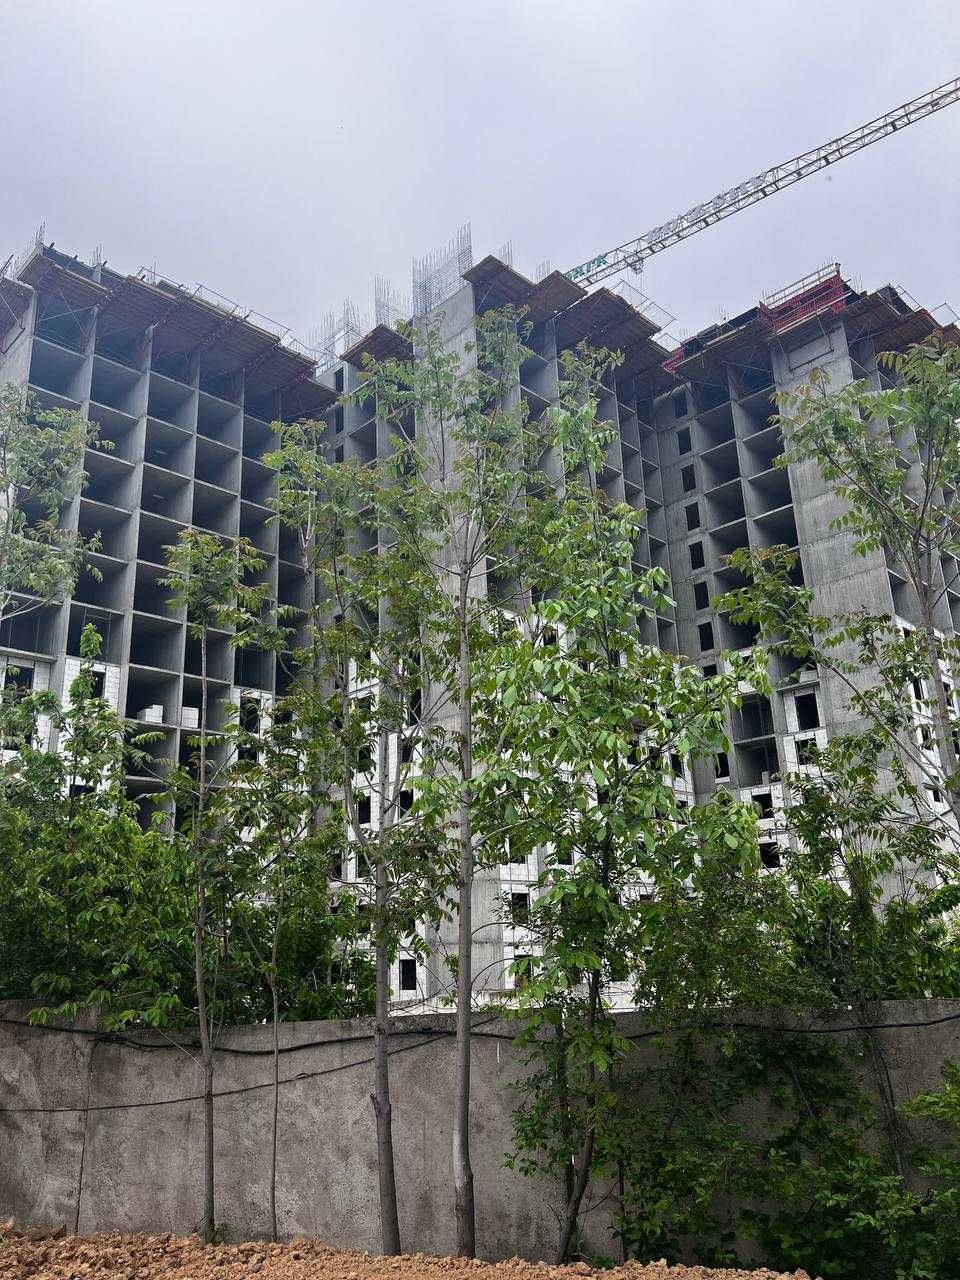 1-комнатные квартиры в строящемся ЖК на Юнусабаде сдаем под ключ (GBK)